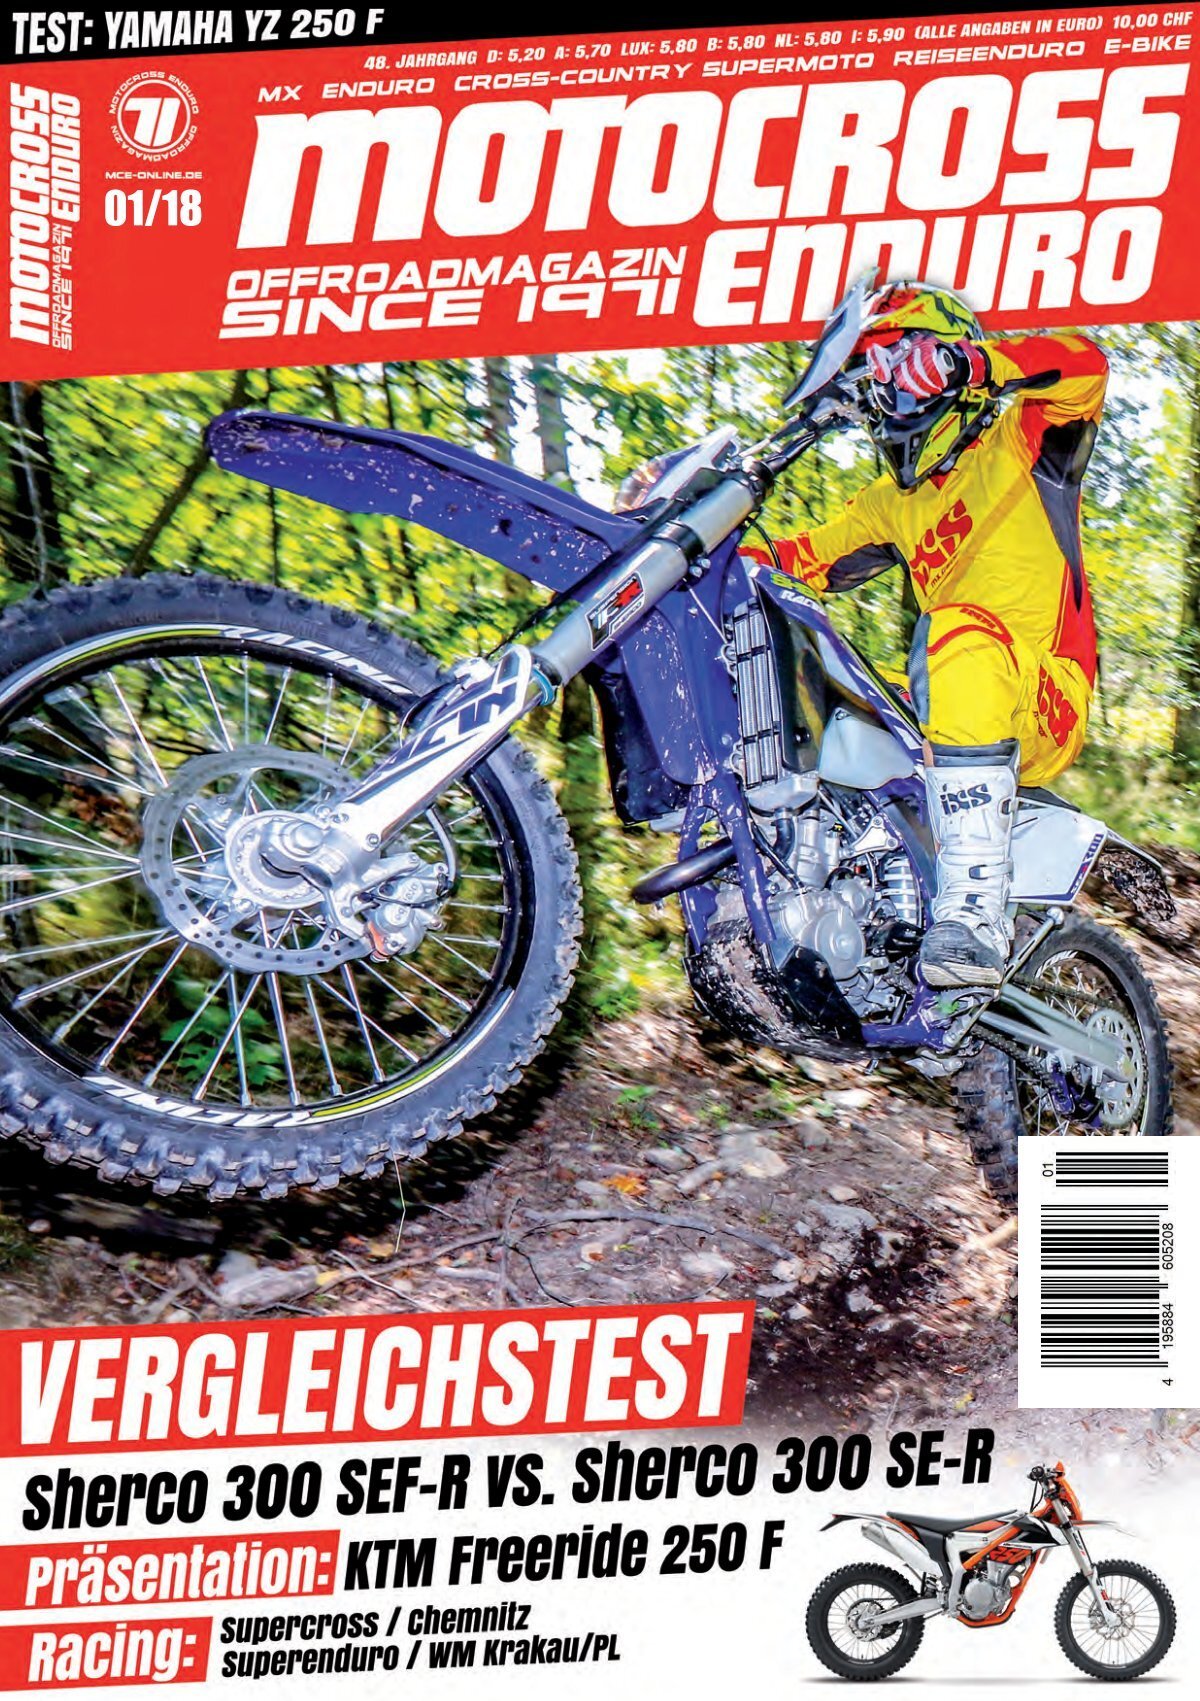 ZAP Halter Bremsleitung vorne im Motocross Enduro Shop MXC GmbH